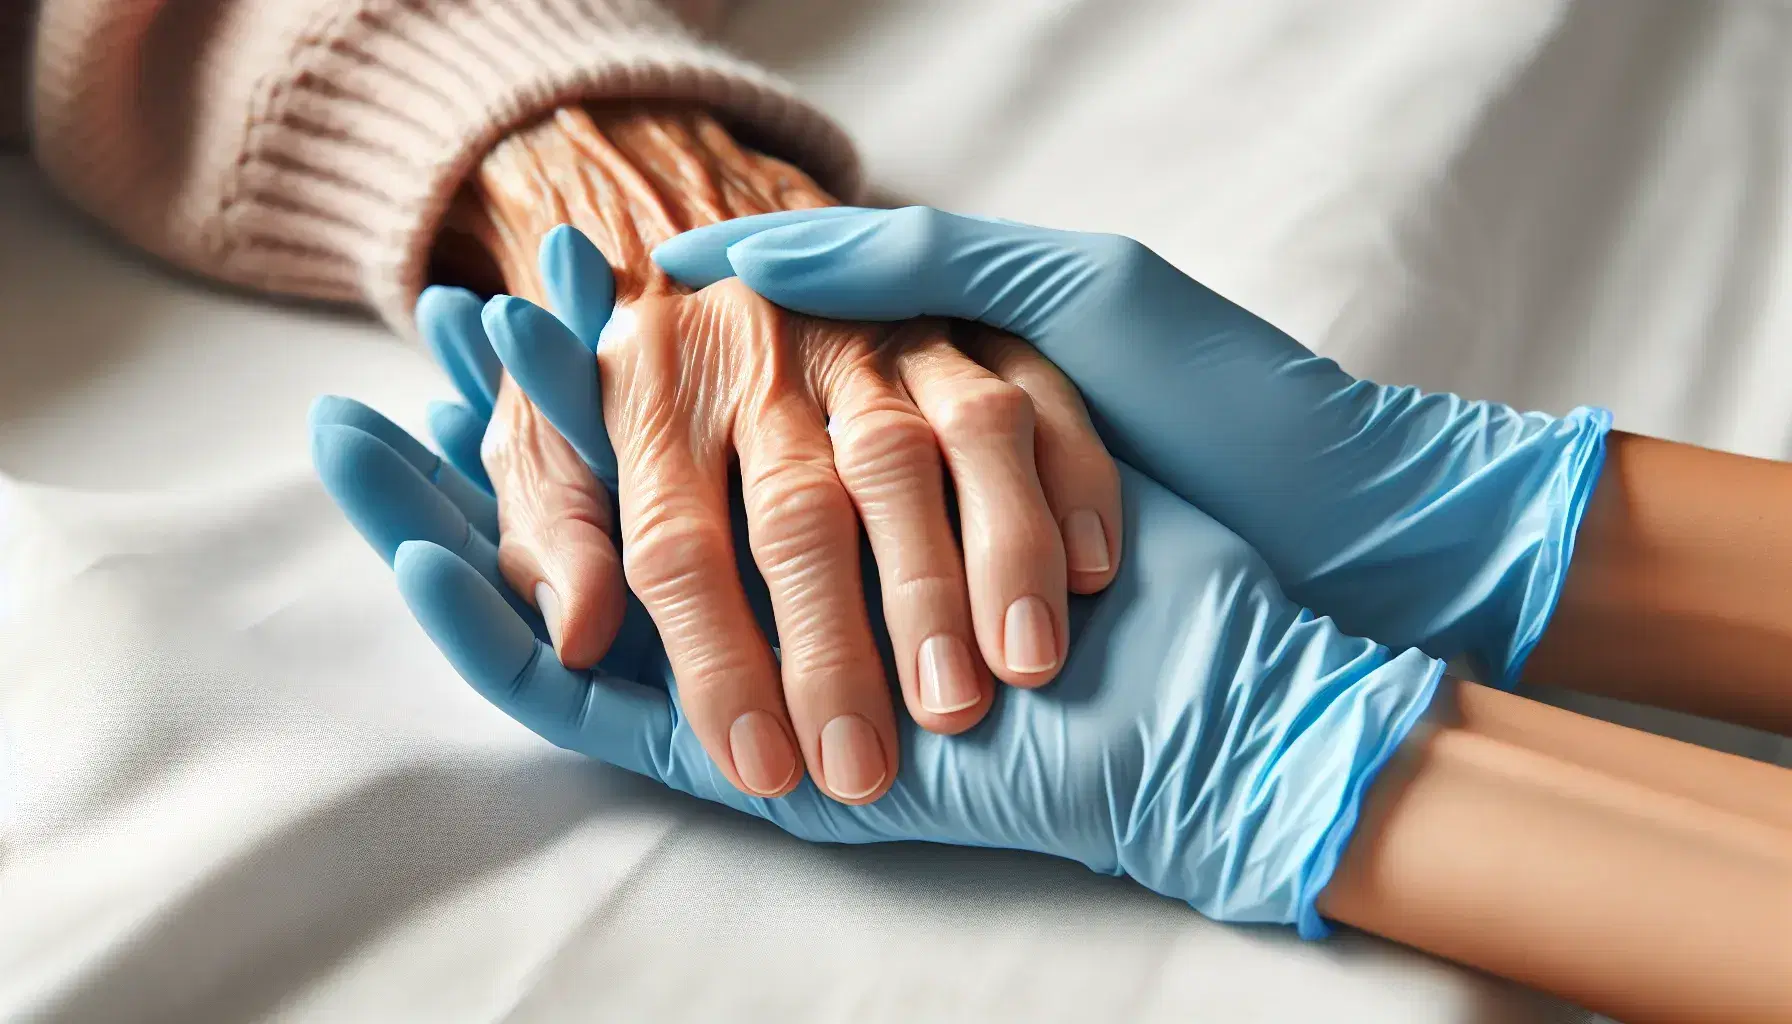 Manos con guantes de látex azules sostienen con cuidado la mano envejecida de un paciente sobre una superficie blanca, transmitiendo apoyo y compasión.